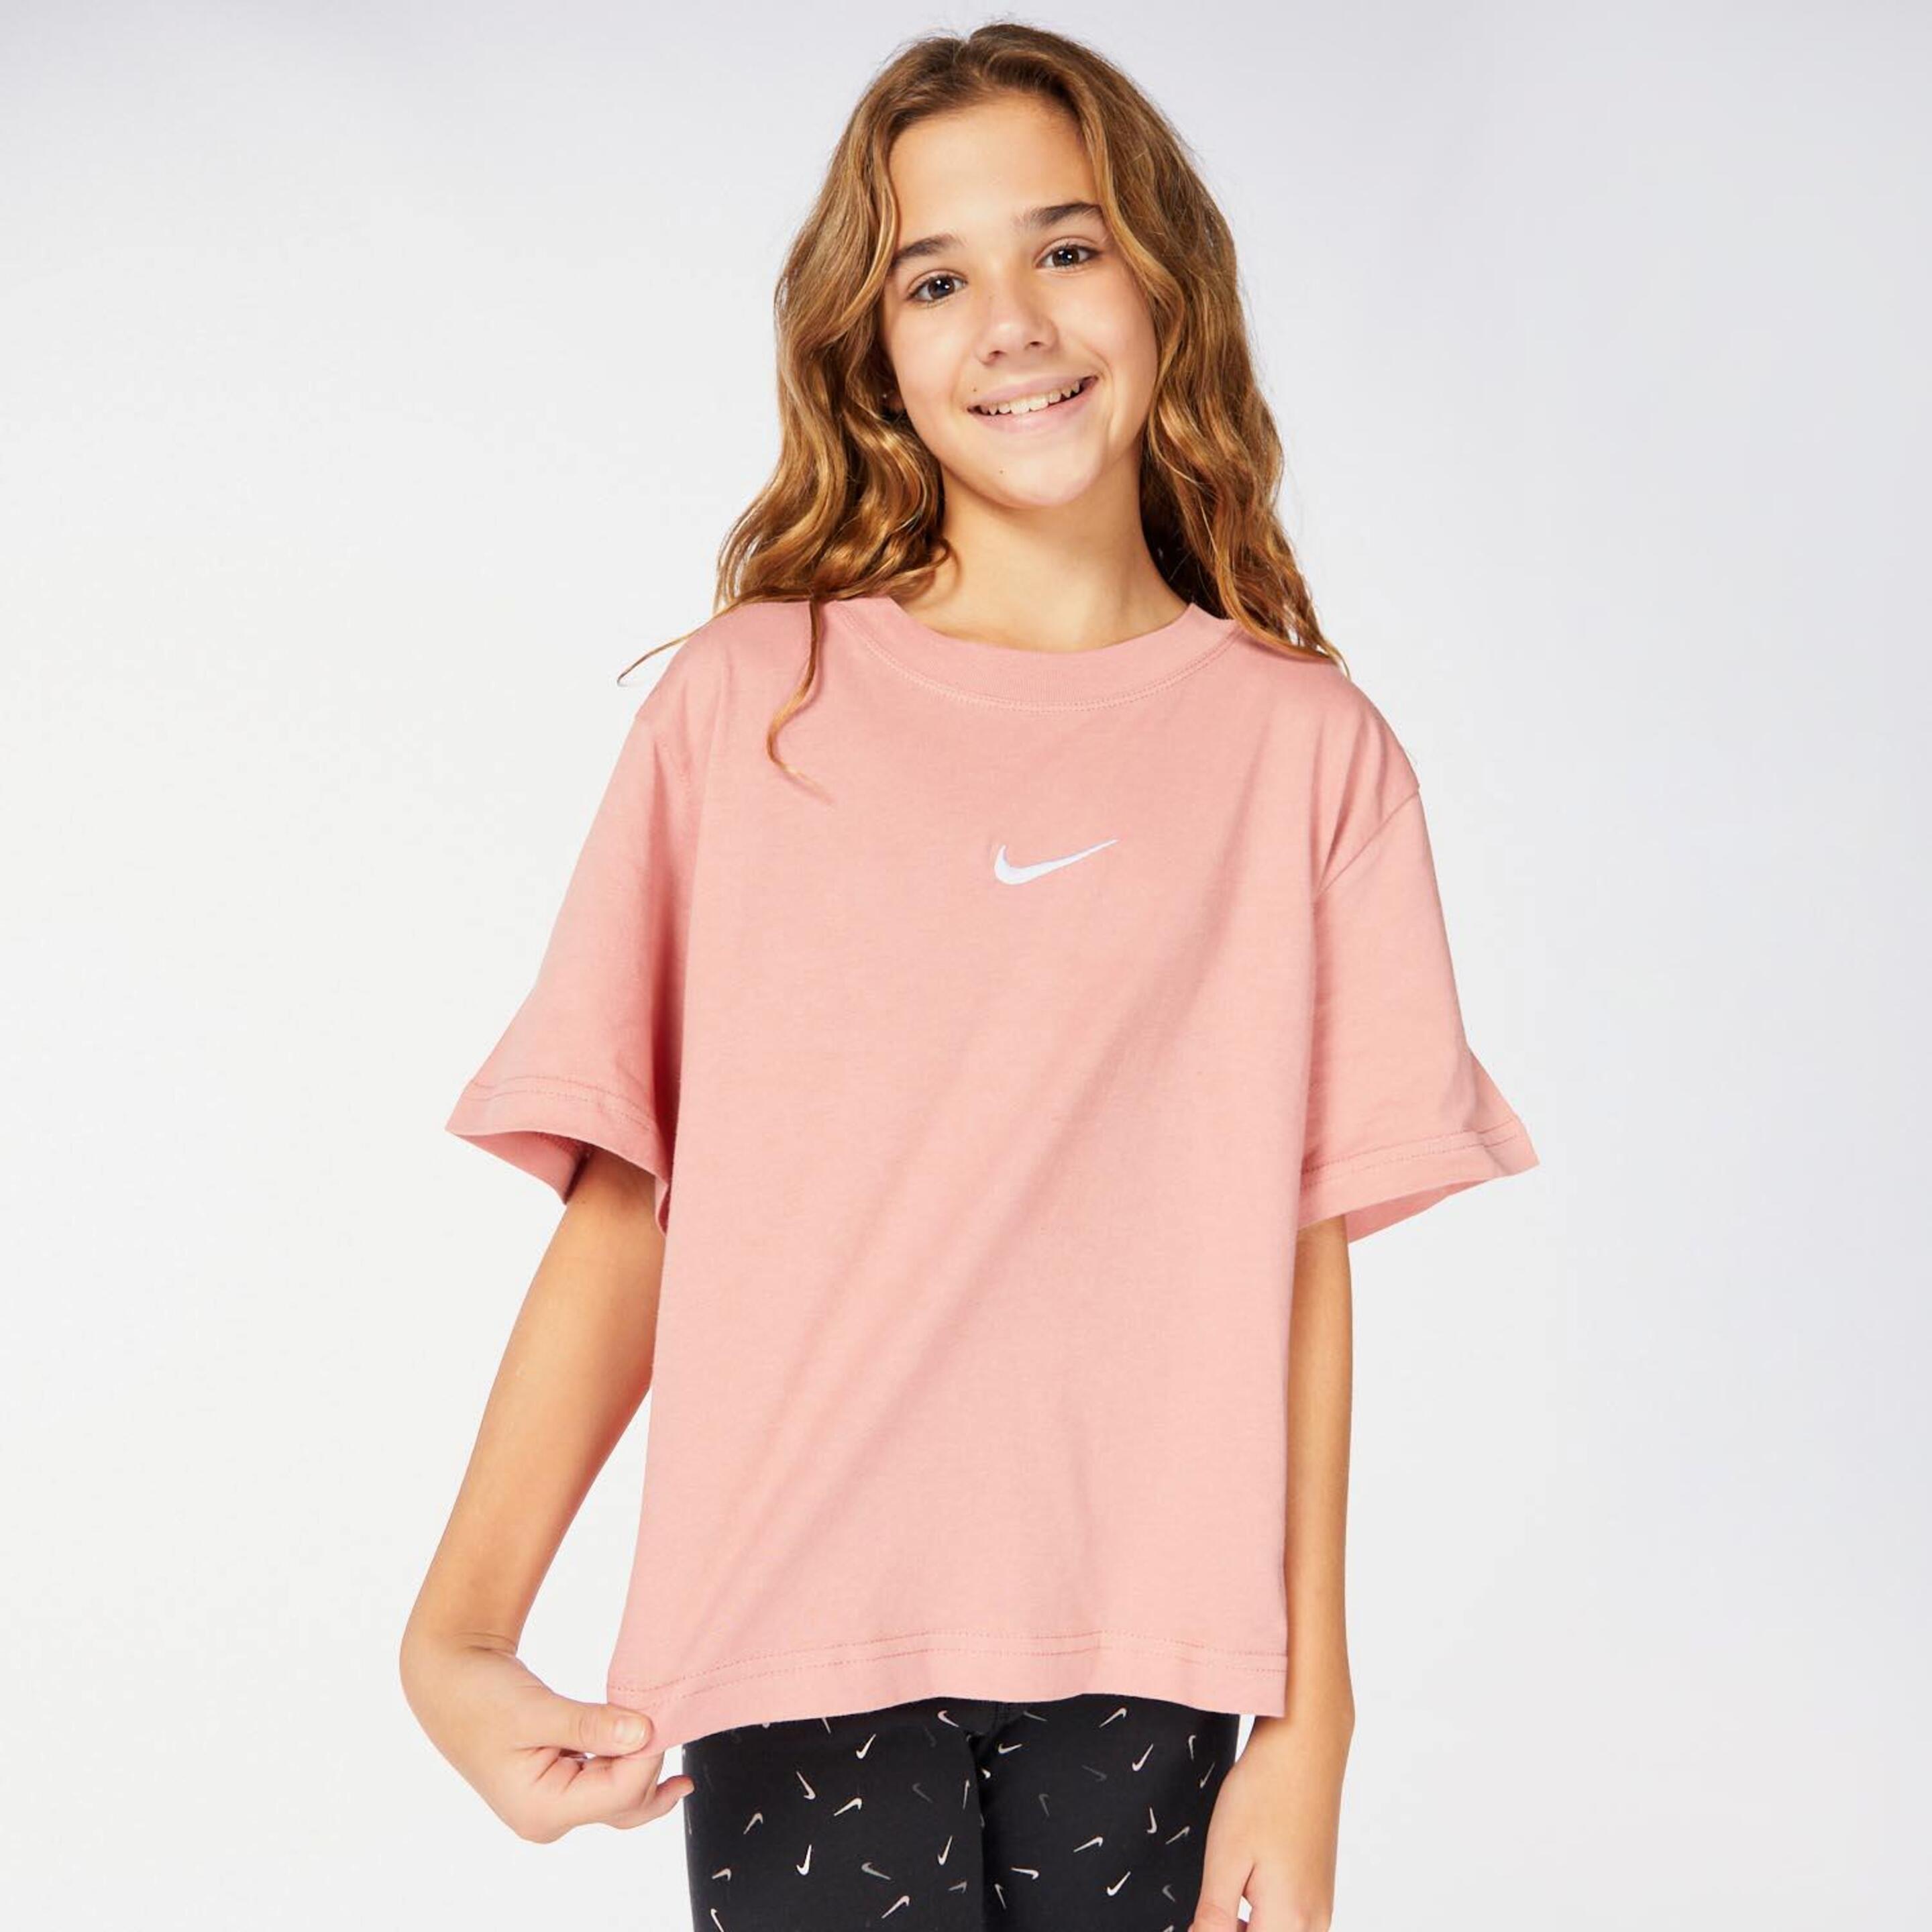 Camiseta Nike - rosa - Camiseta Niña